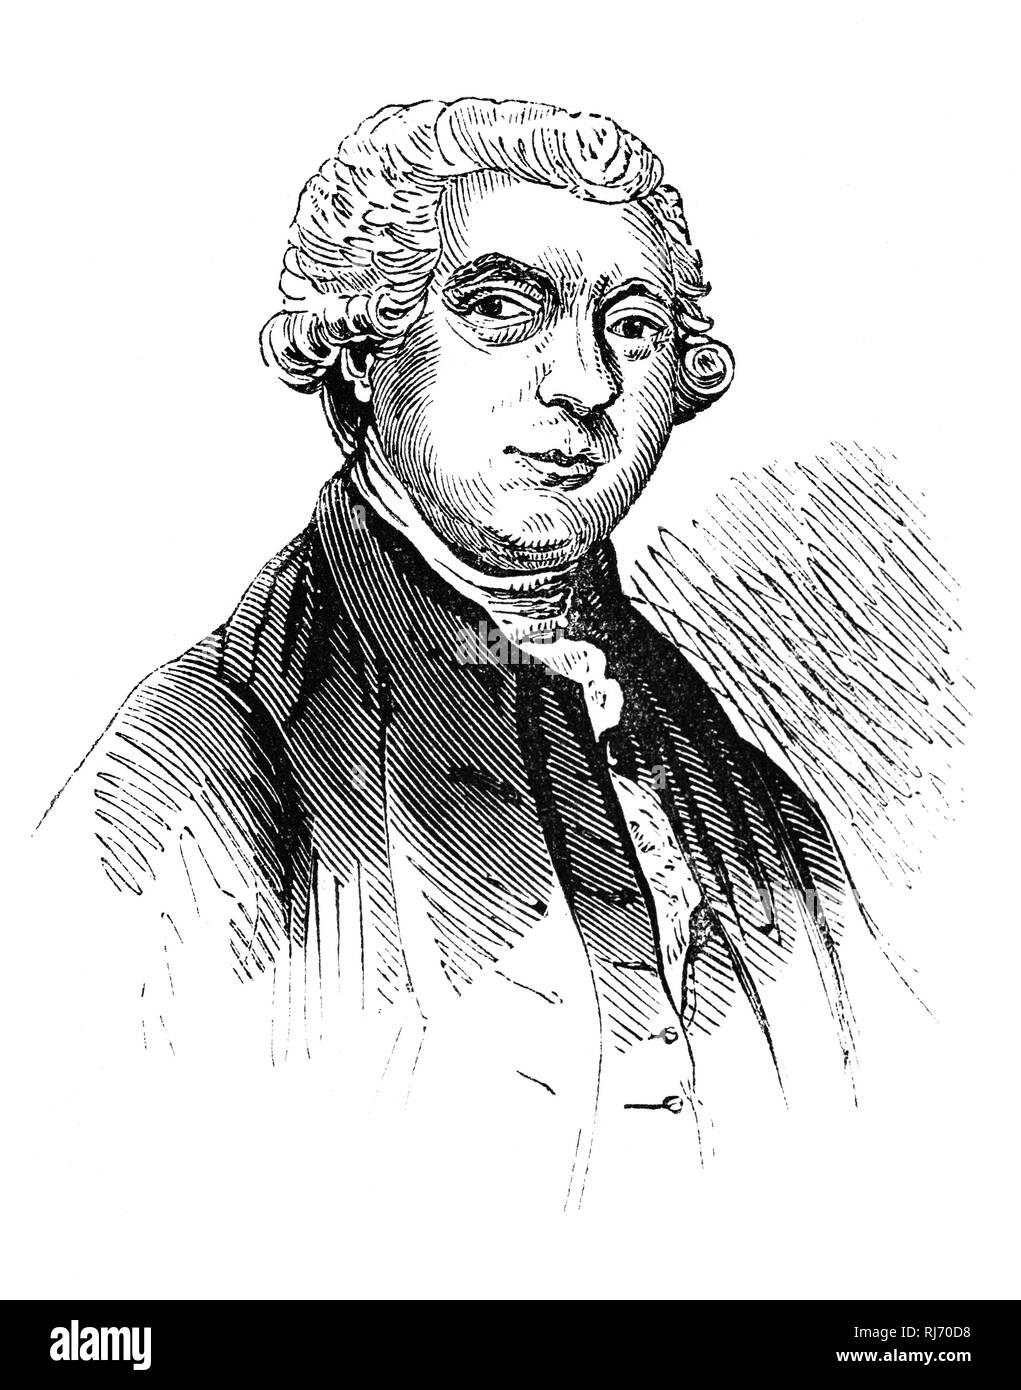 James Boswell, 9 Laird von auchinleck (1740-1795), war ein schottischer Biograf und tagebuchschreibers, in Edinburgh geboren. Er ist am besten für die Biographie, die er von seinem Freund und zeitgenössische, Samuel Johnson, der Englische literarische Figur "Das Leben von Samuel Johnson" im Jahre 1791 die allgemein gesagt ist die größte Biografie in englischer Sprache geschrieben werden veröffentlicht schrieb bekannt. Seinen Namen hat in die englische Sprache als Begriff (Boswell, Boswellian, Boswellism) für ein ständiger Begleiter und Beobachter, besonders derjenige, der Datensätze diese Bemerkungen im Druck weitergegeben. Stockfoto